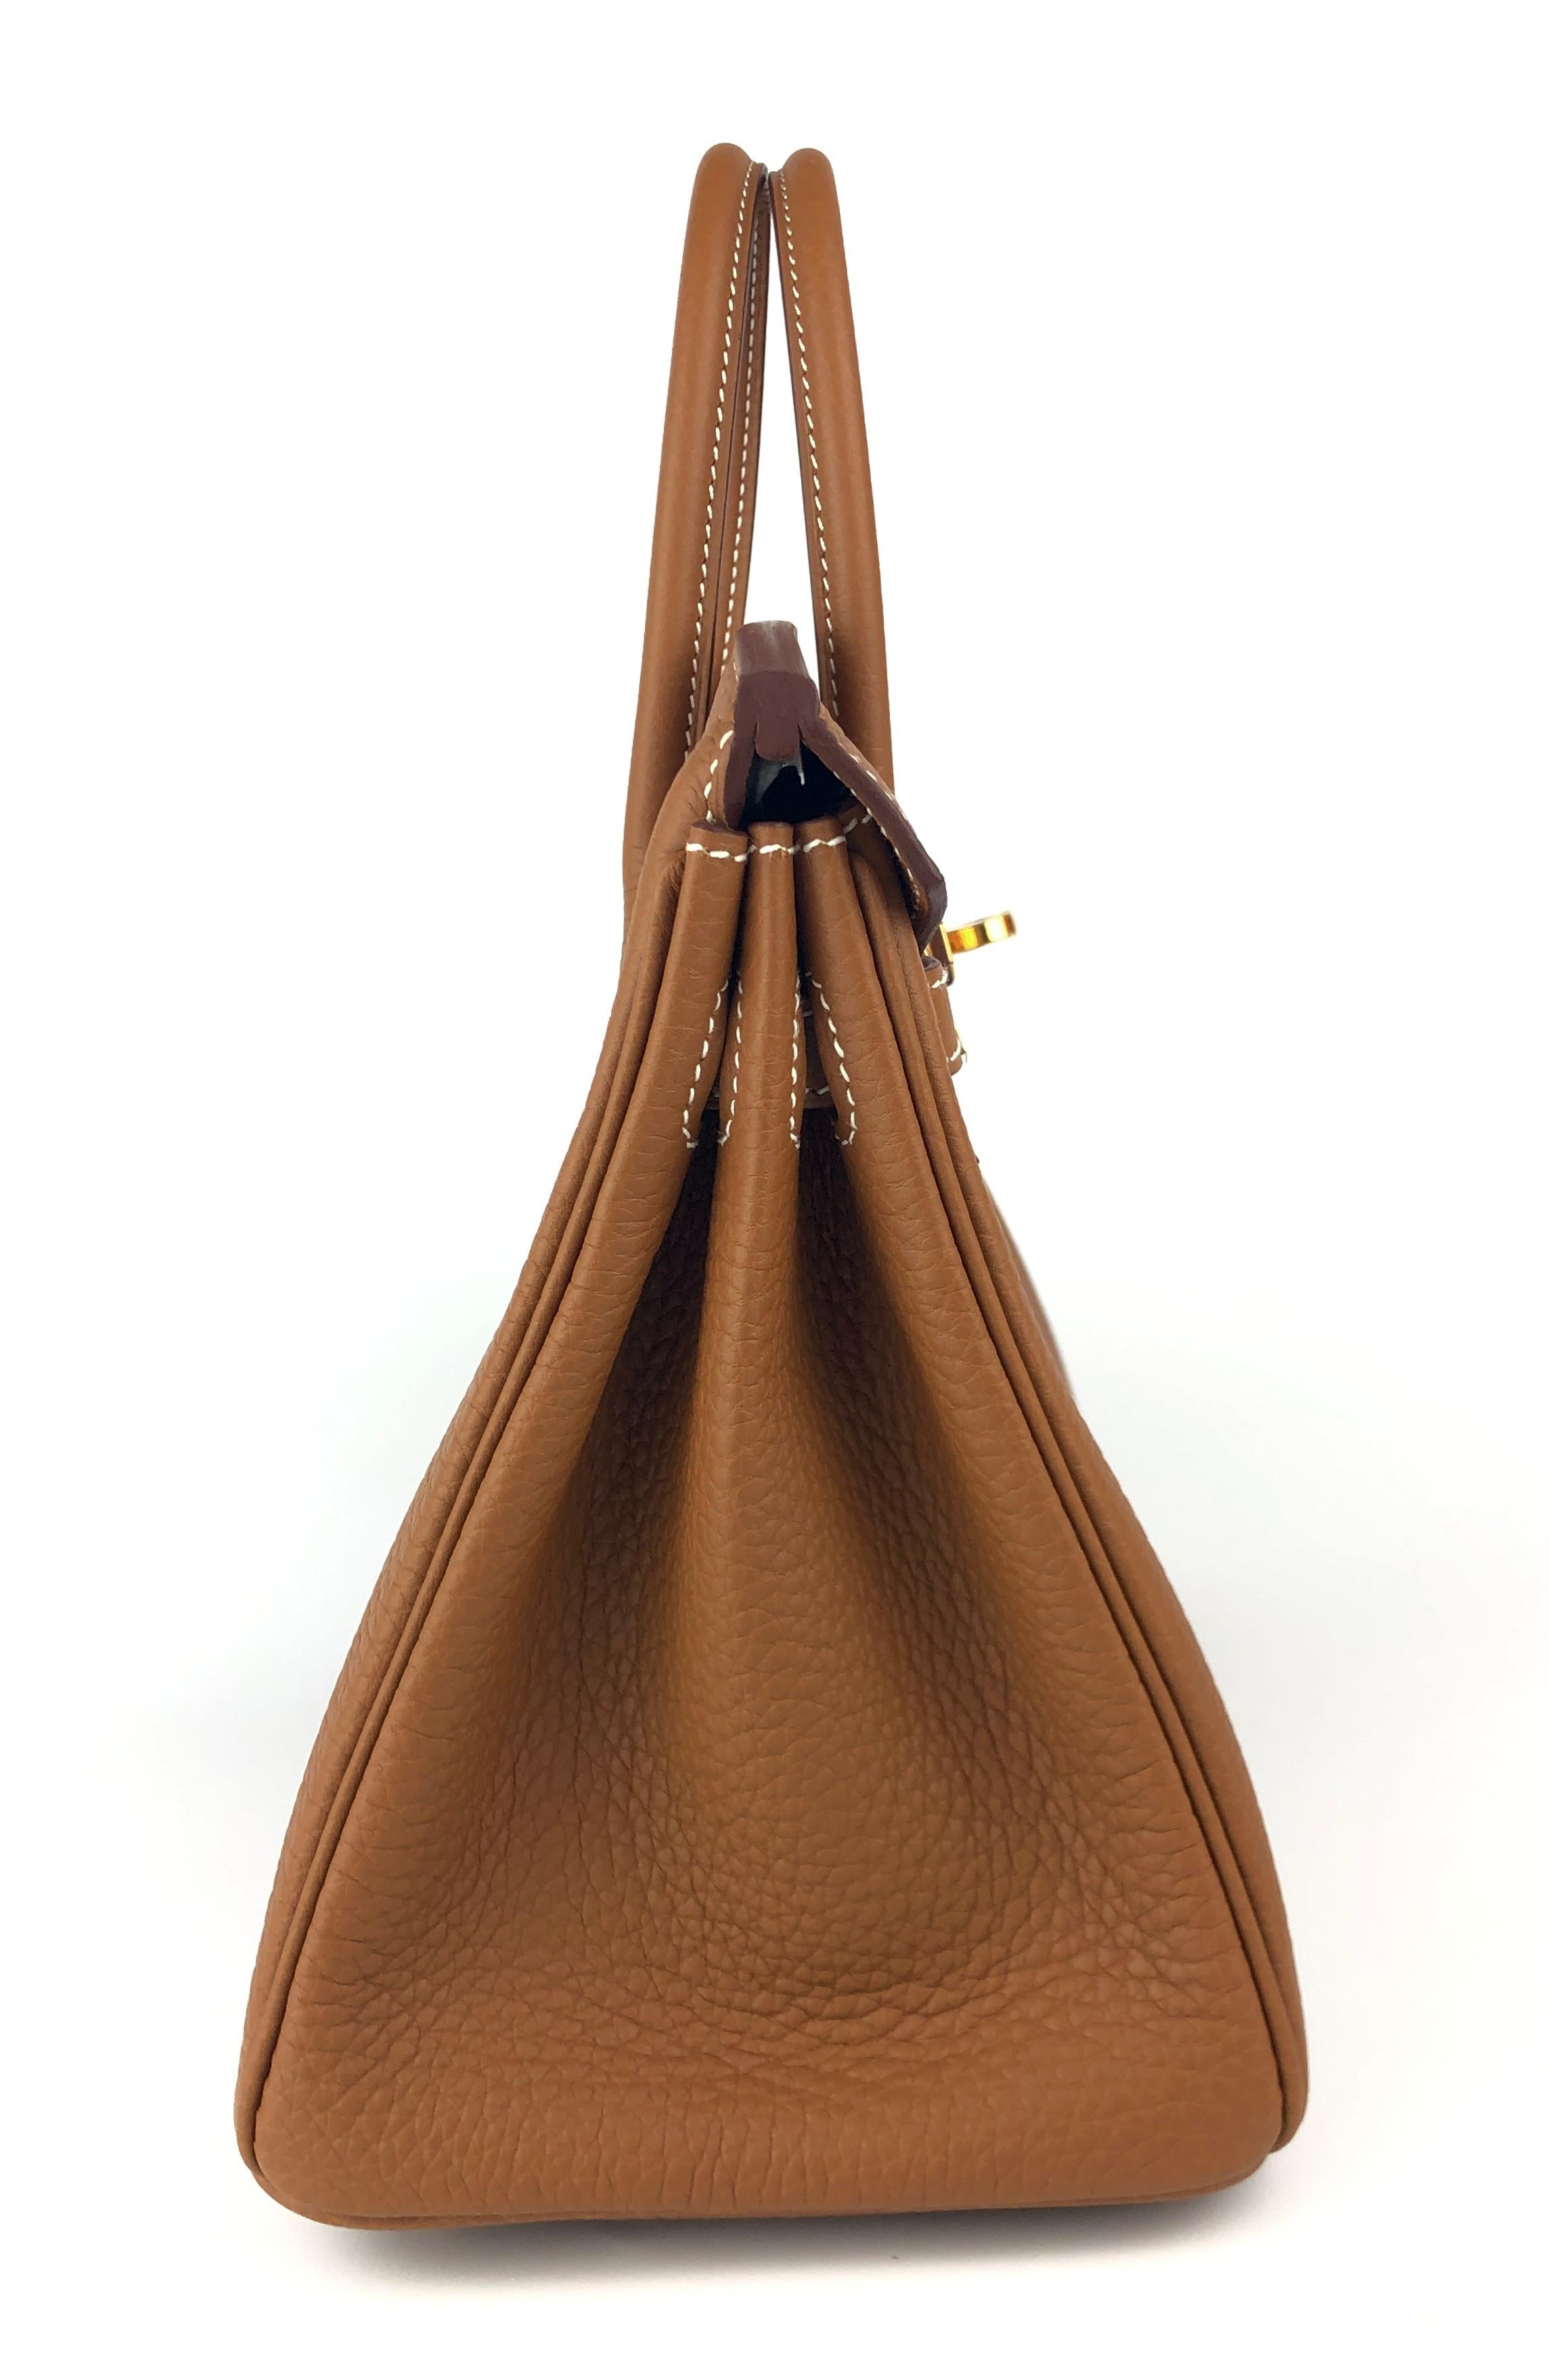 Hermes Birkin 25 Gold Tan Togo Leather Handbag Gold Hardware  For Sale 1